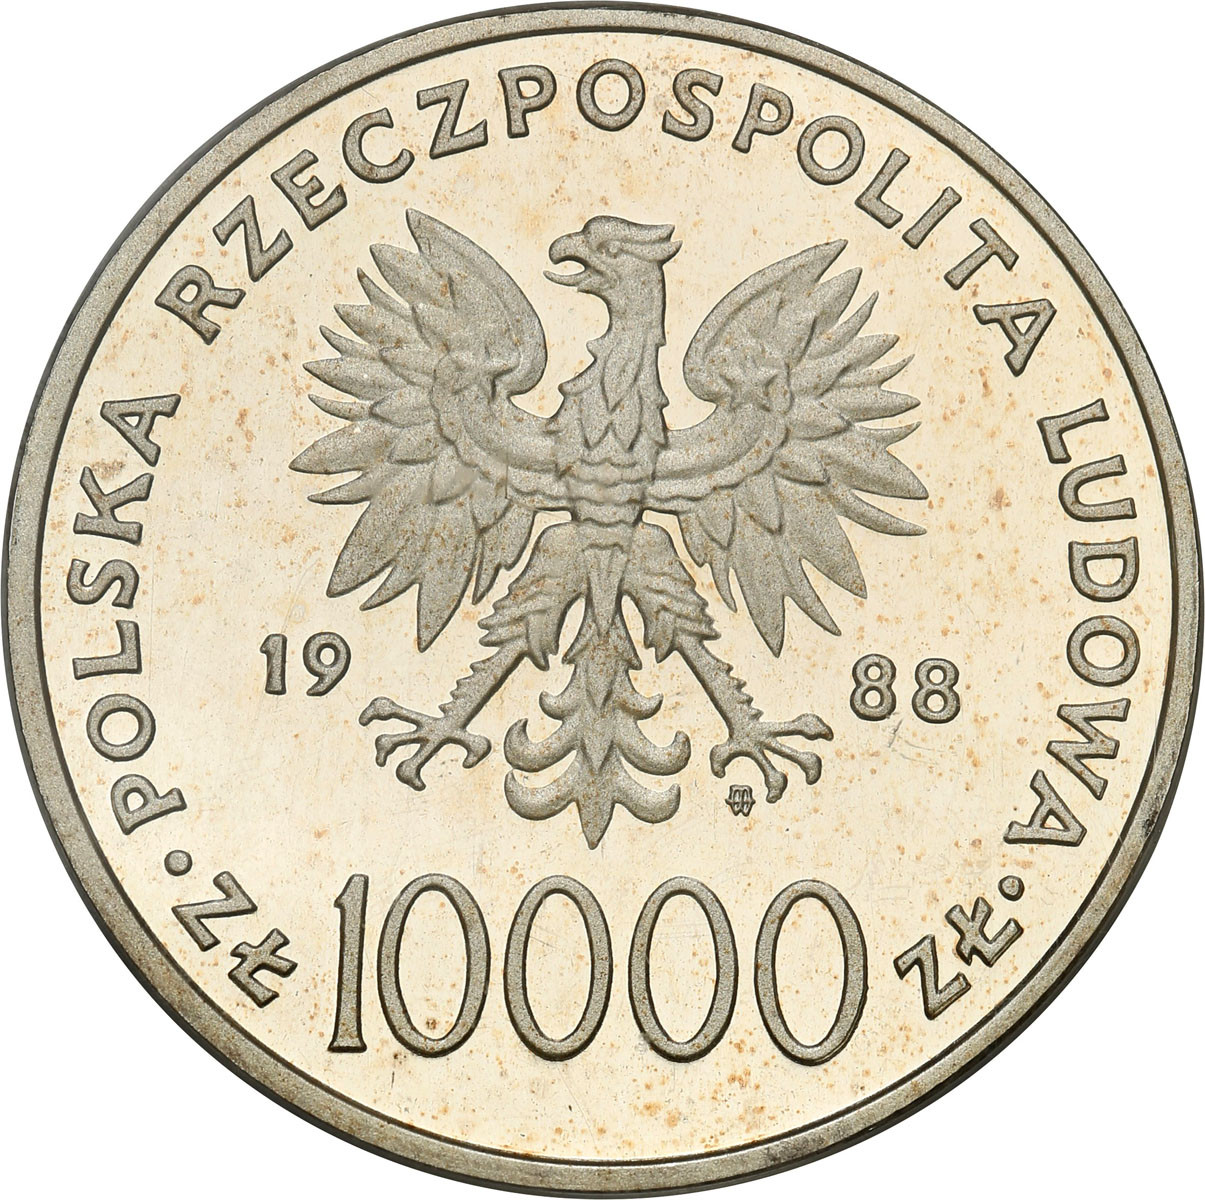 PRL. 10.000 złotych 1988 Jan Paweł II - X lat pontyfikatu PCGS PR67 DCAM